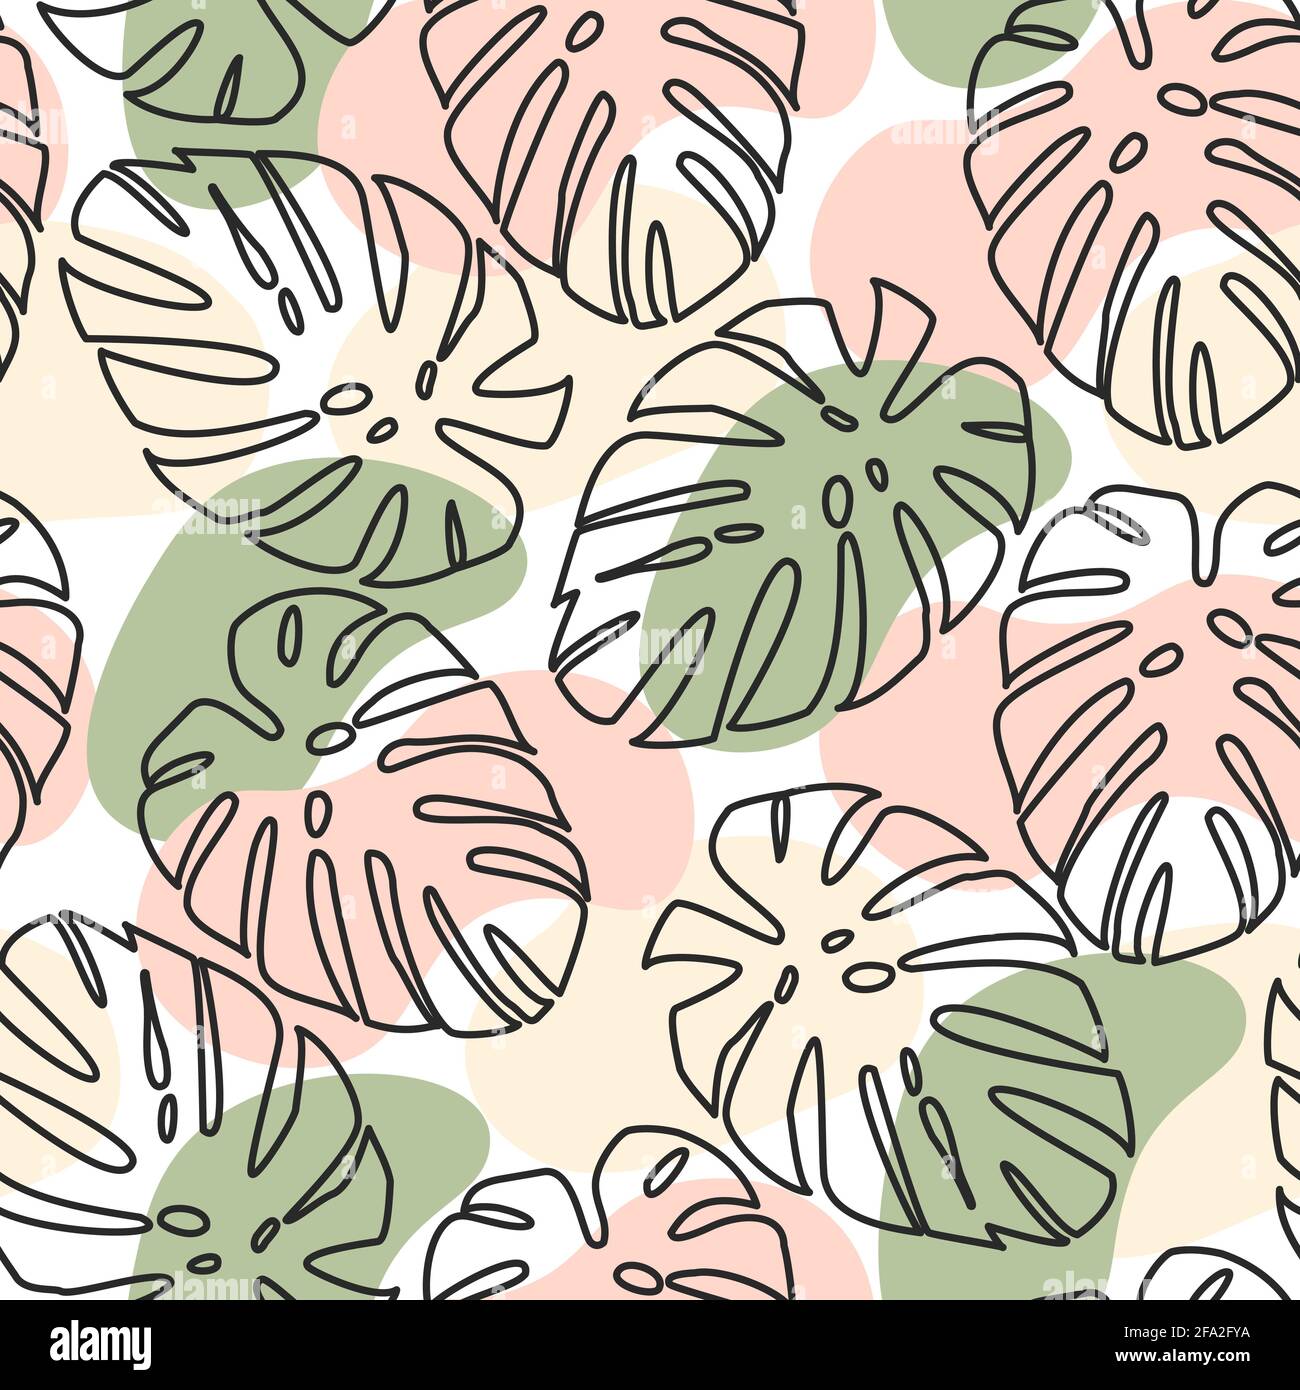 Motivo senza cuciture di contorni neri di foglie di palma e punti disegnati a mano di fiori beige, rosa e verde su uno sfondo bianco. Moderno modello color pastello Illustrazione Vettoriale